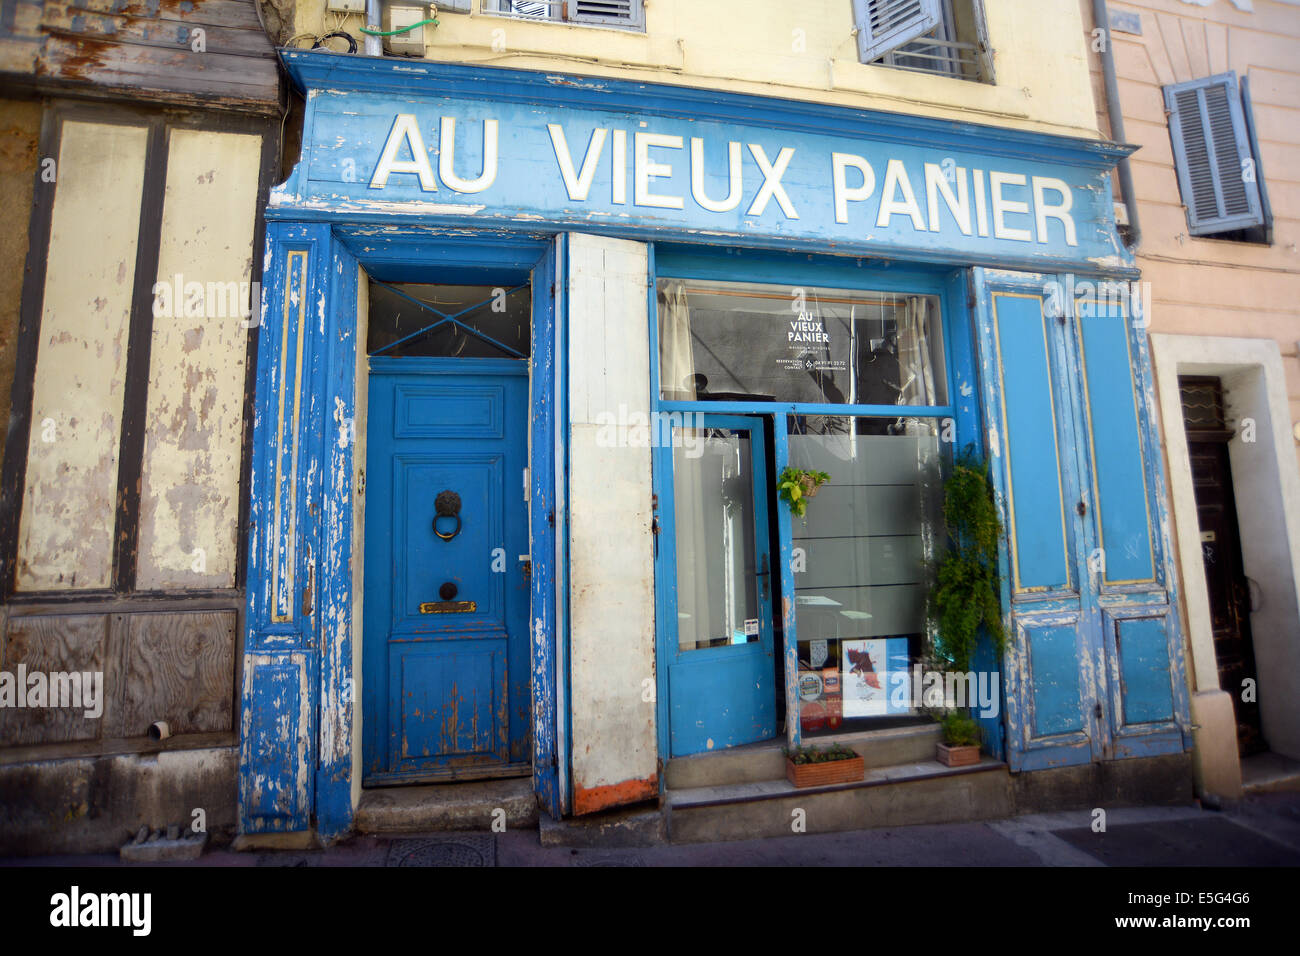 Au vieux Panier Marseille Bouches-du-Rhone France Stock Photo - Alamy